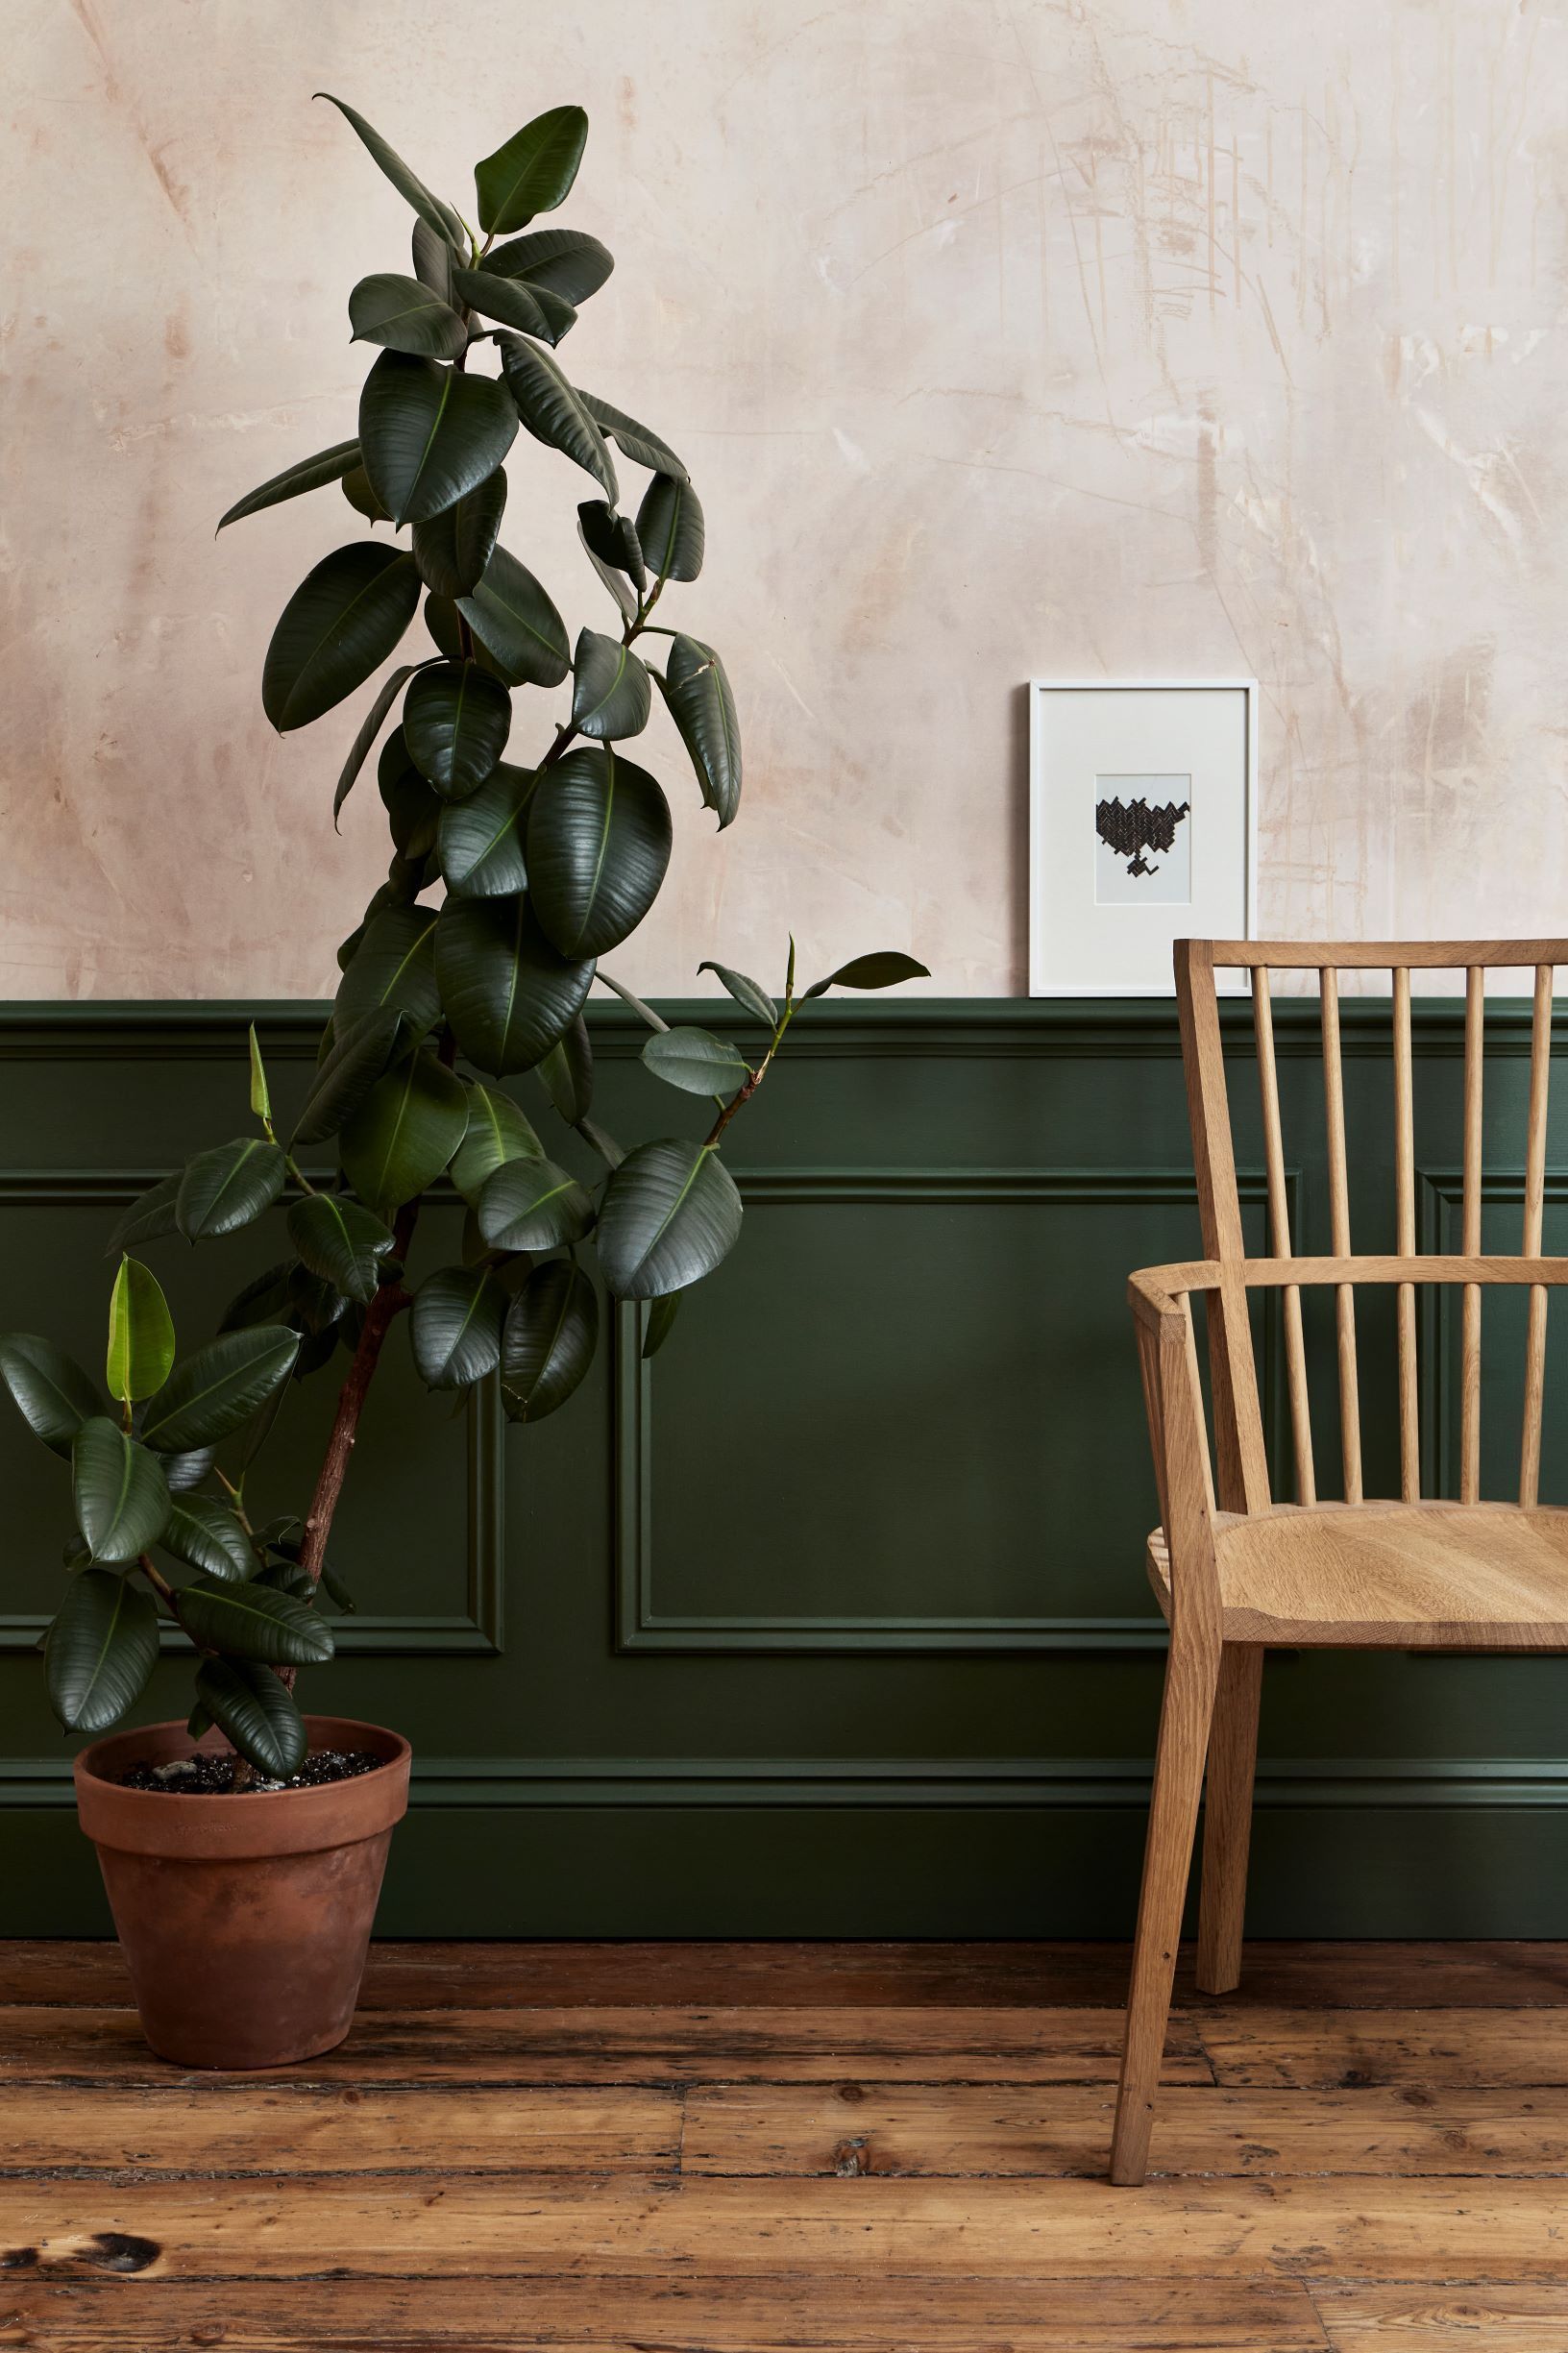 外國很流行將房間的牆身油成墨綠色，配搭原木色系統櫃有種清新送爽的感覺